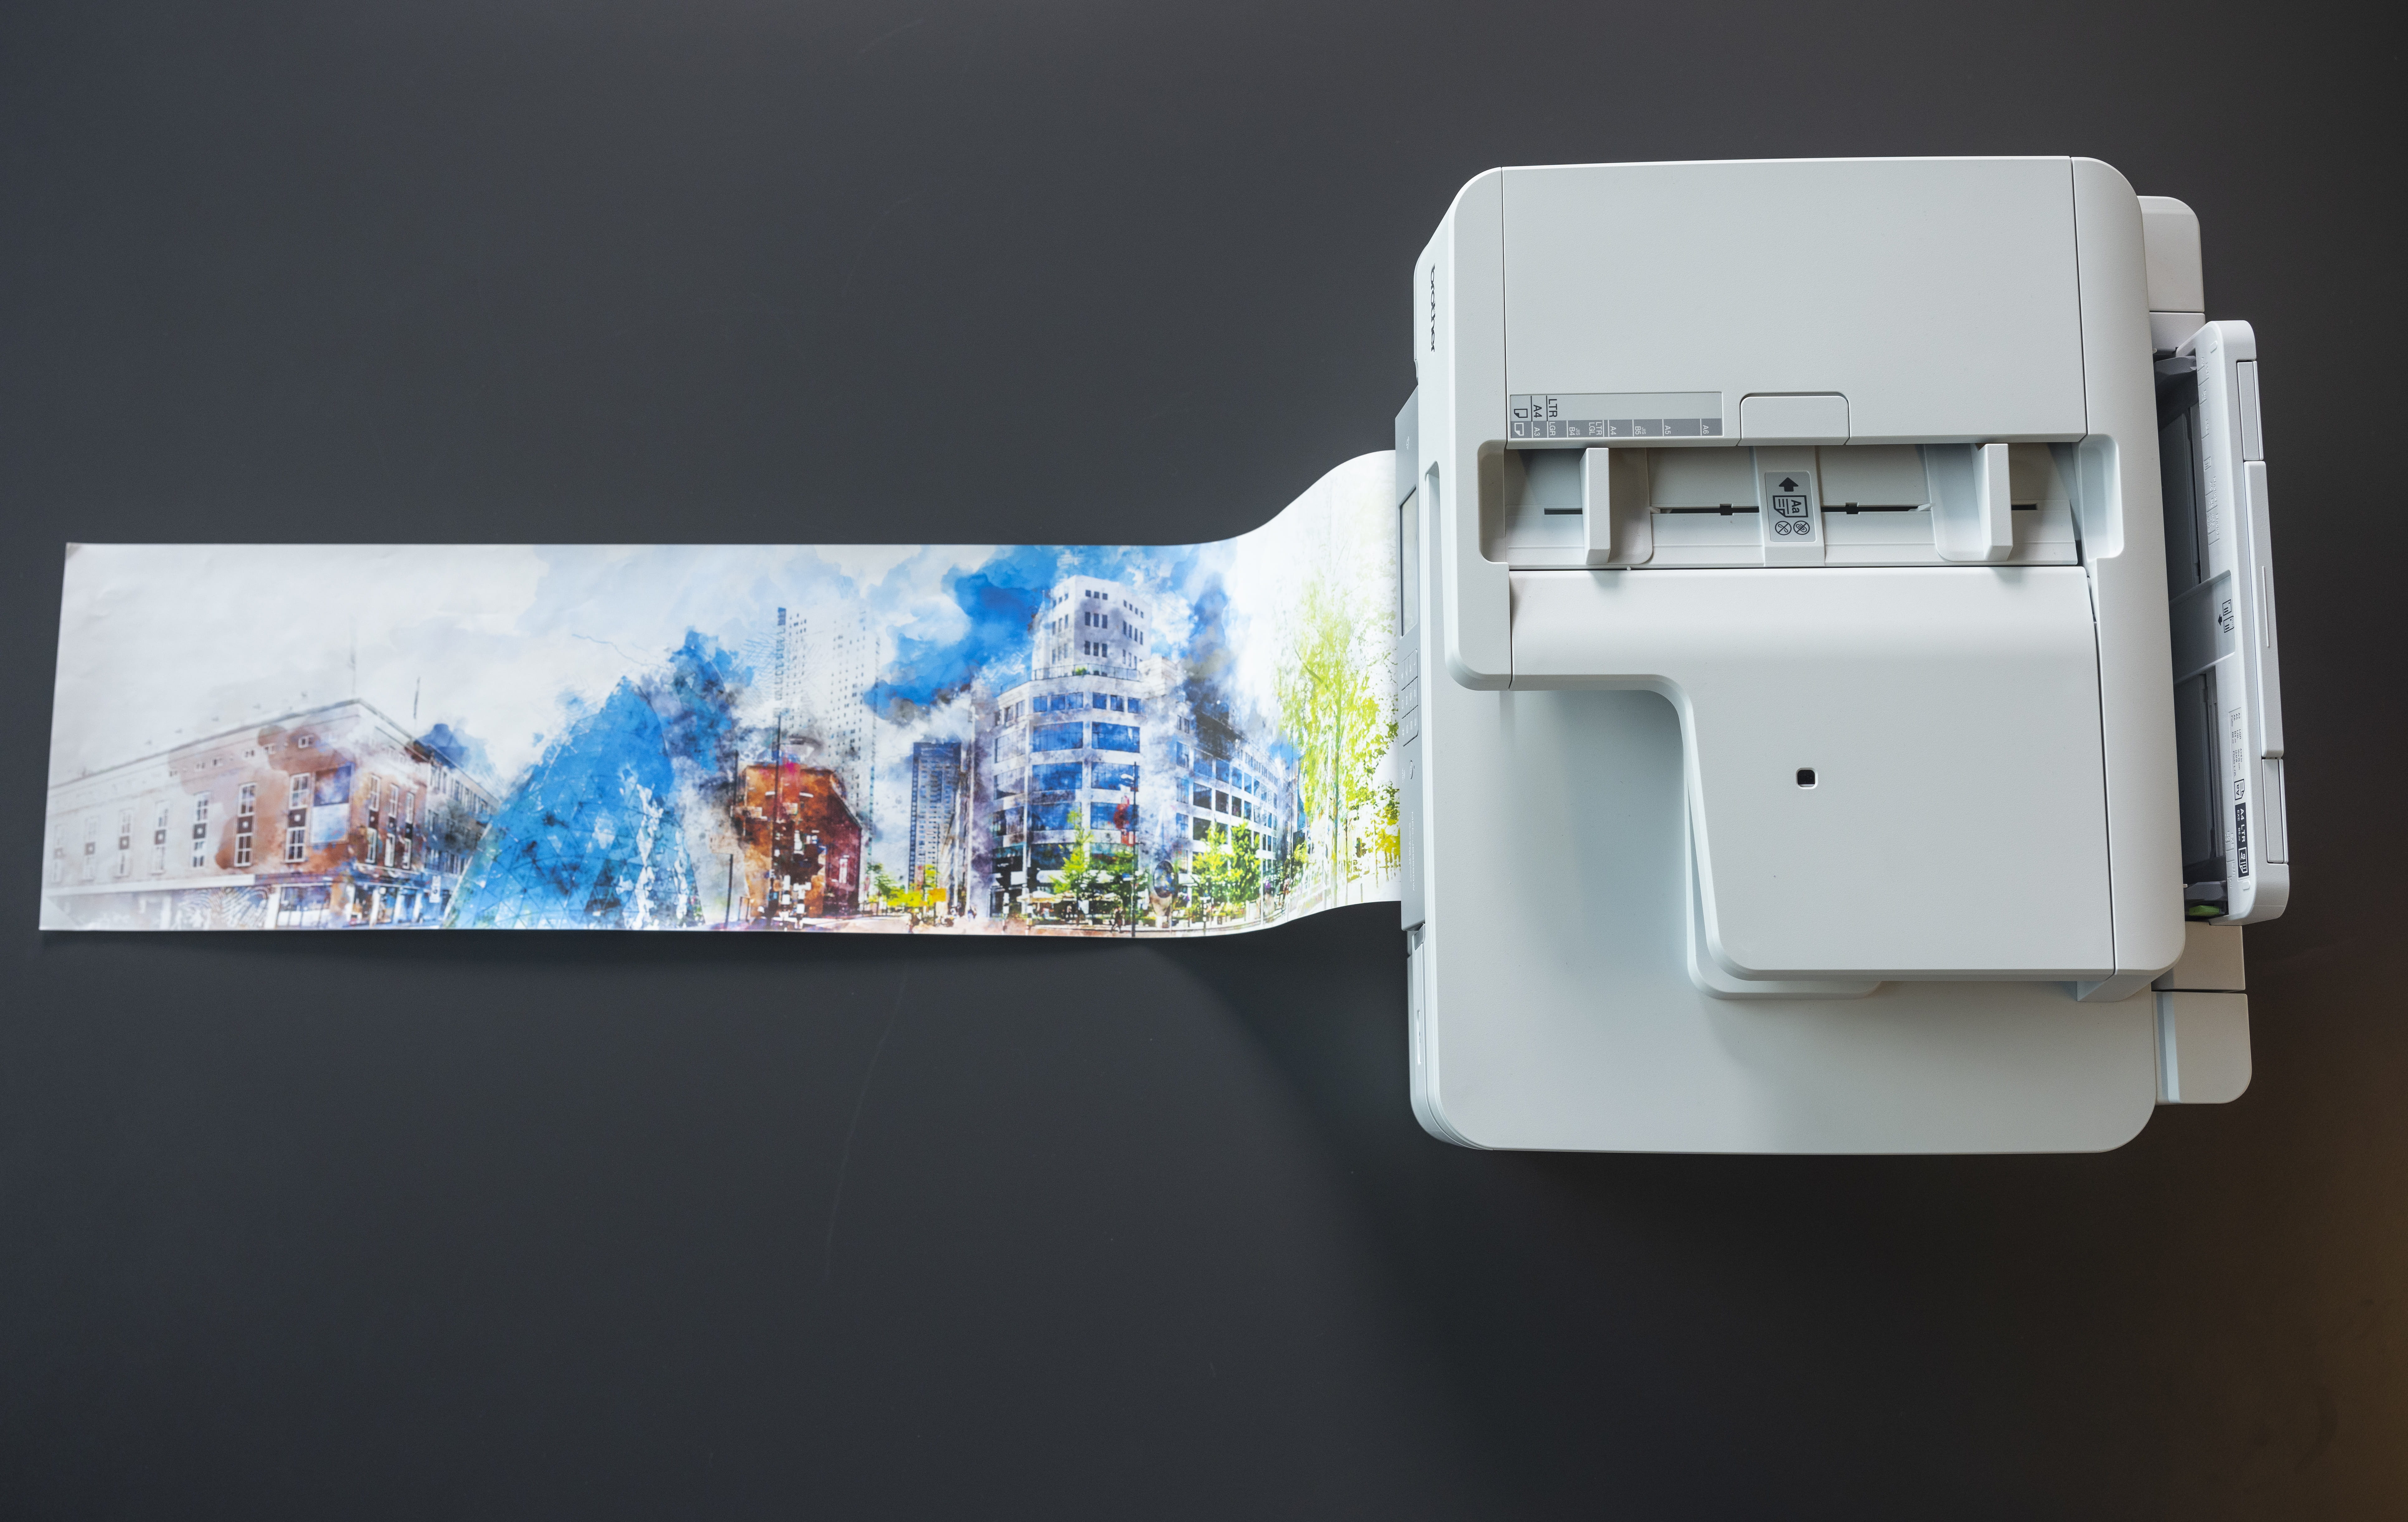 Sur l'image, on peut voir l'imprimante MFC-J6959DW en train d'imprimer une photo en grand format.